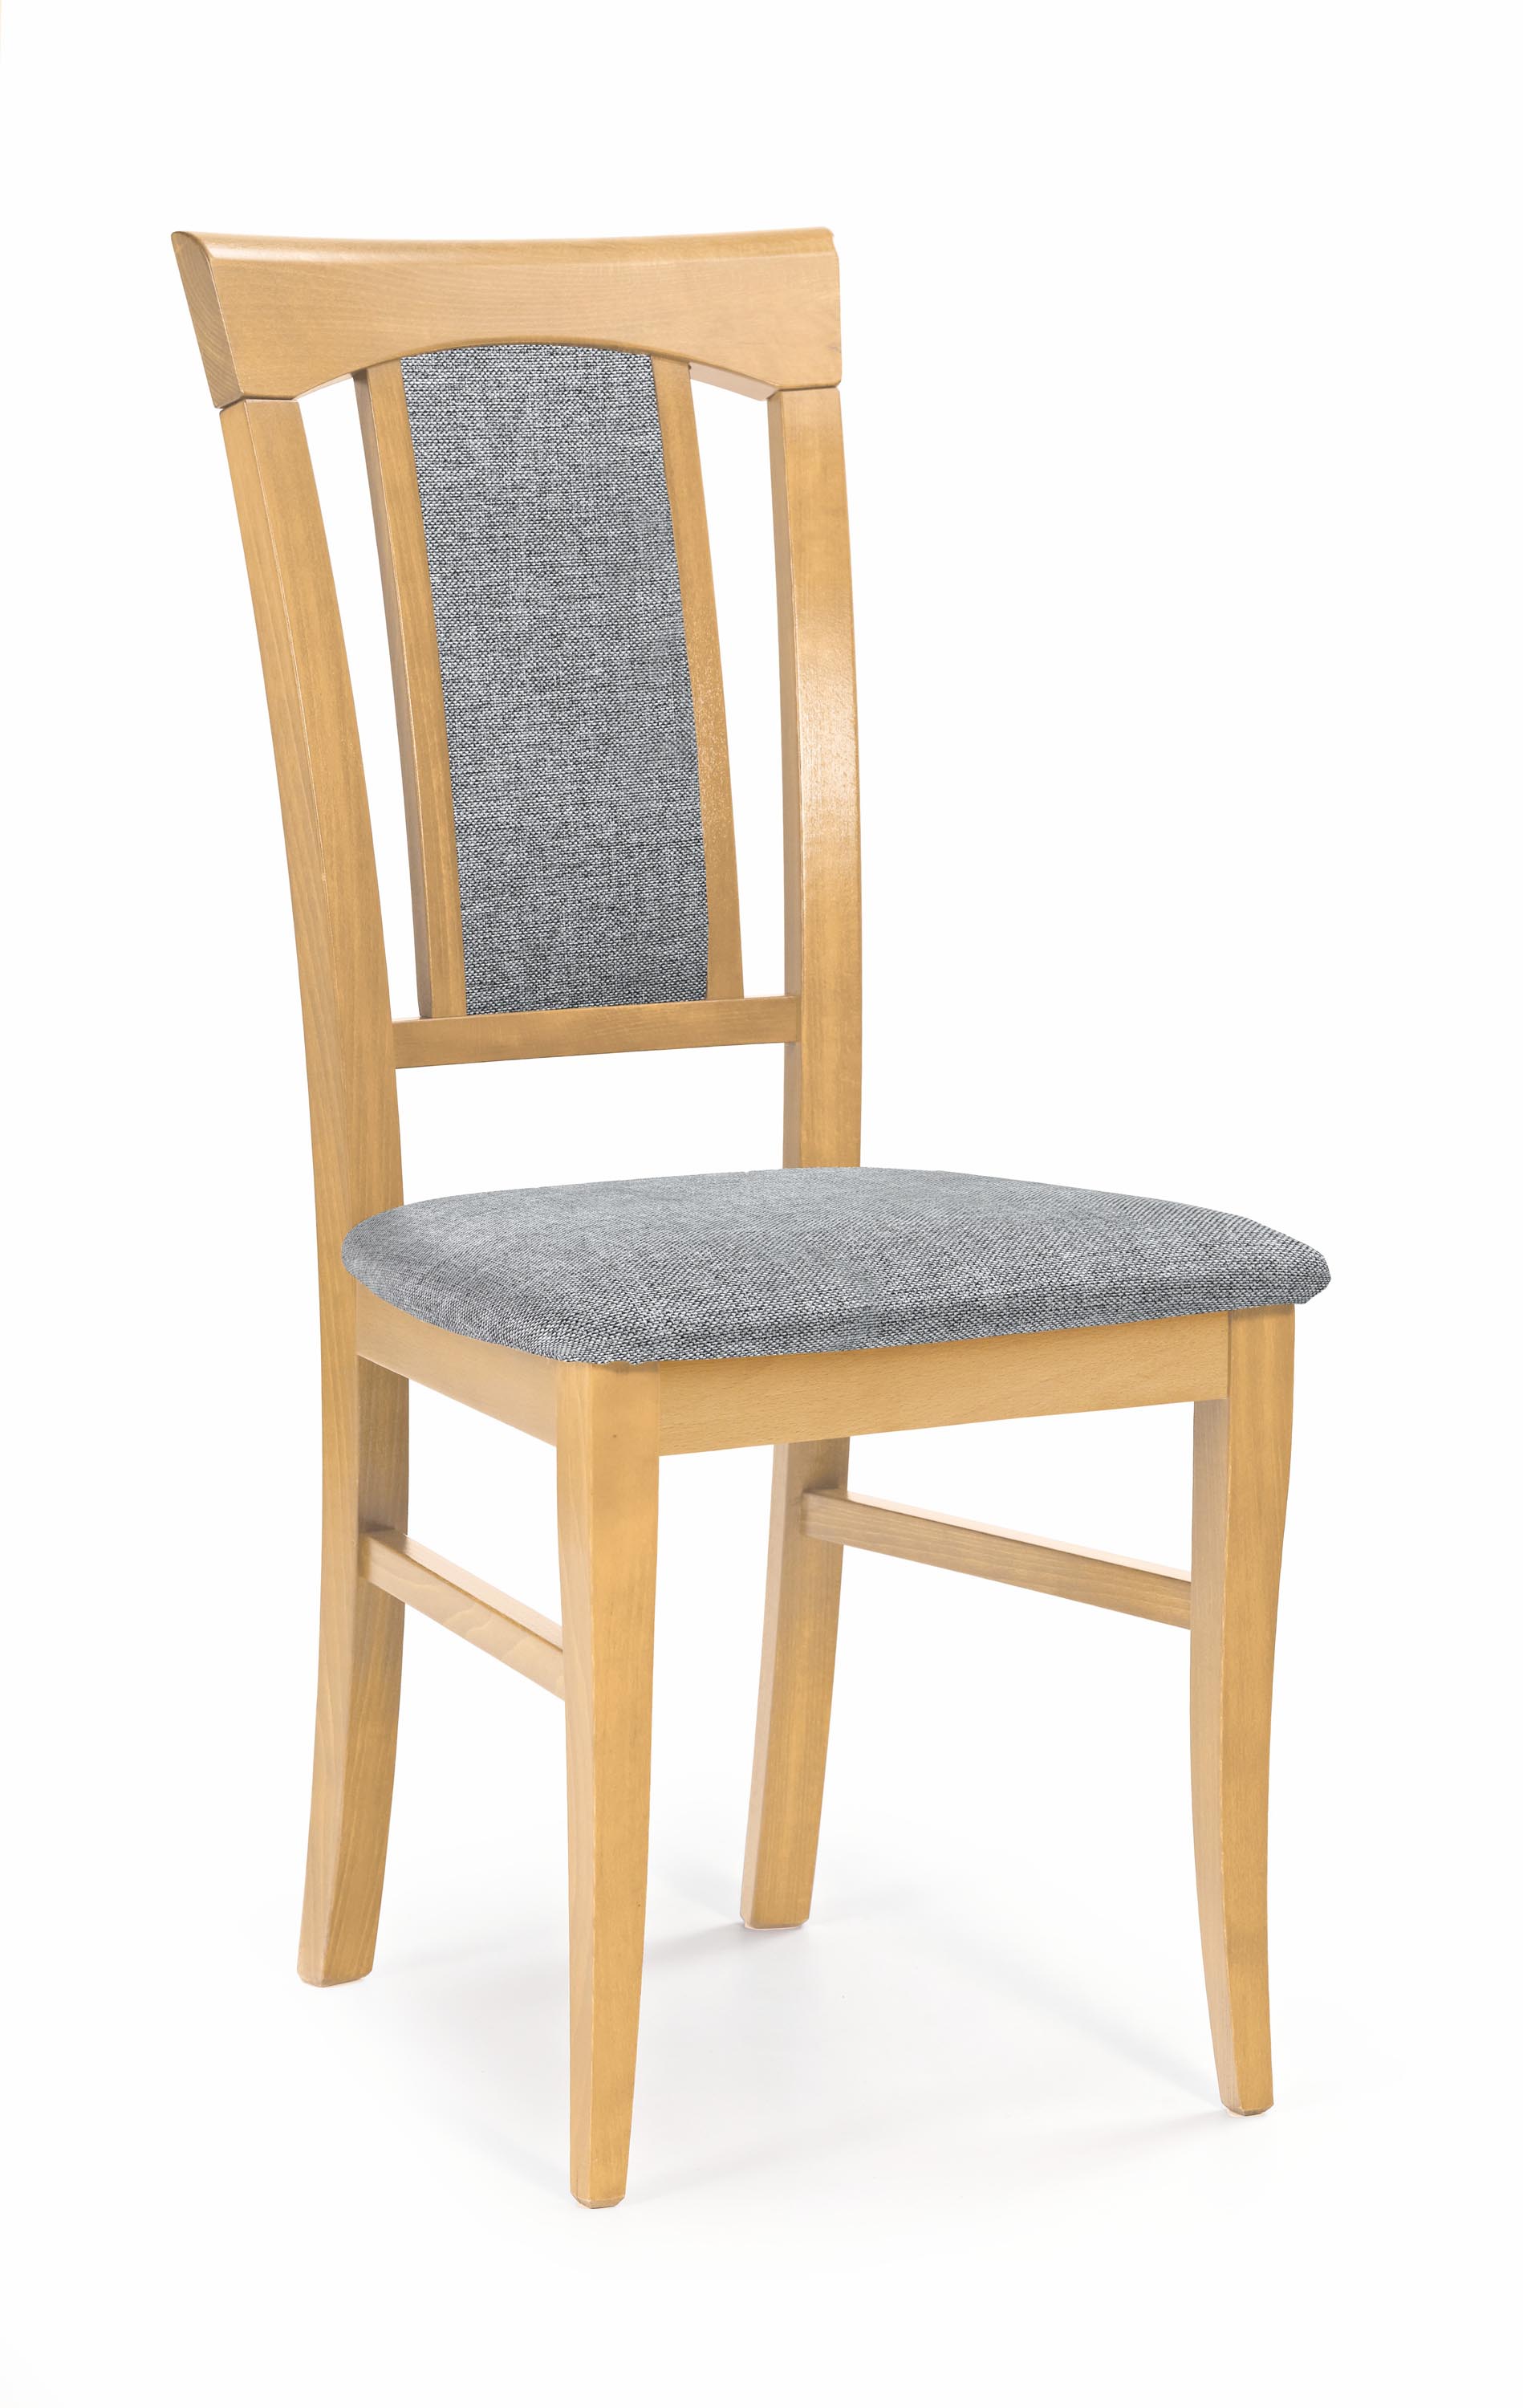 KONRAD krzesło dąb miodowy / tap: Inari 91 konrad krzesło dąb miodowy / tap: inari 91